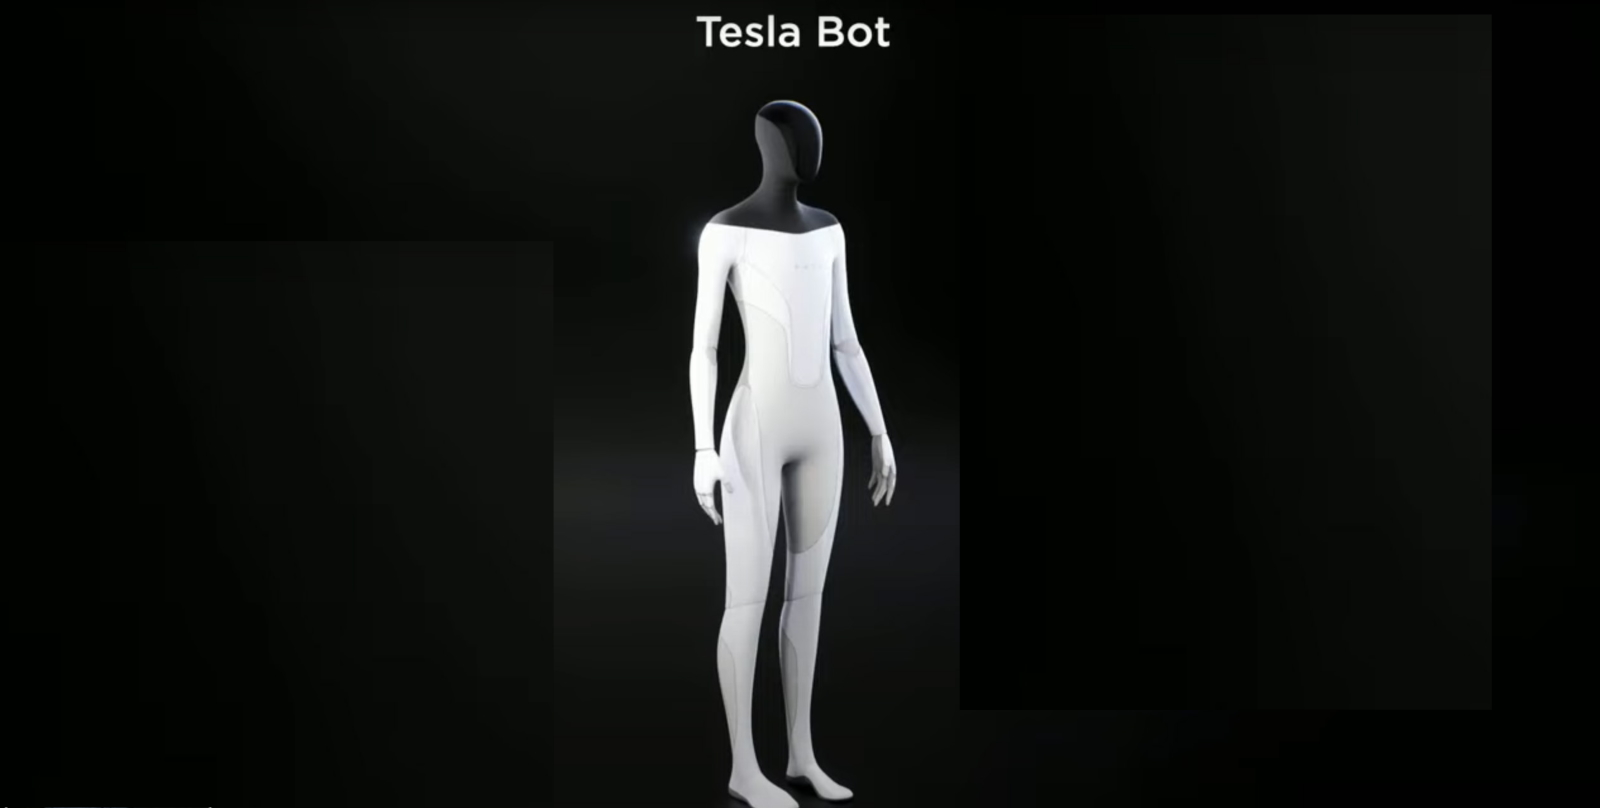 Le robot&nbsp;adopte une apparence humanoïde pour mieux s’intégrer à son environnement et remplacer les humains dans leurs tâches quotidiennes à la maison. © Tesla